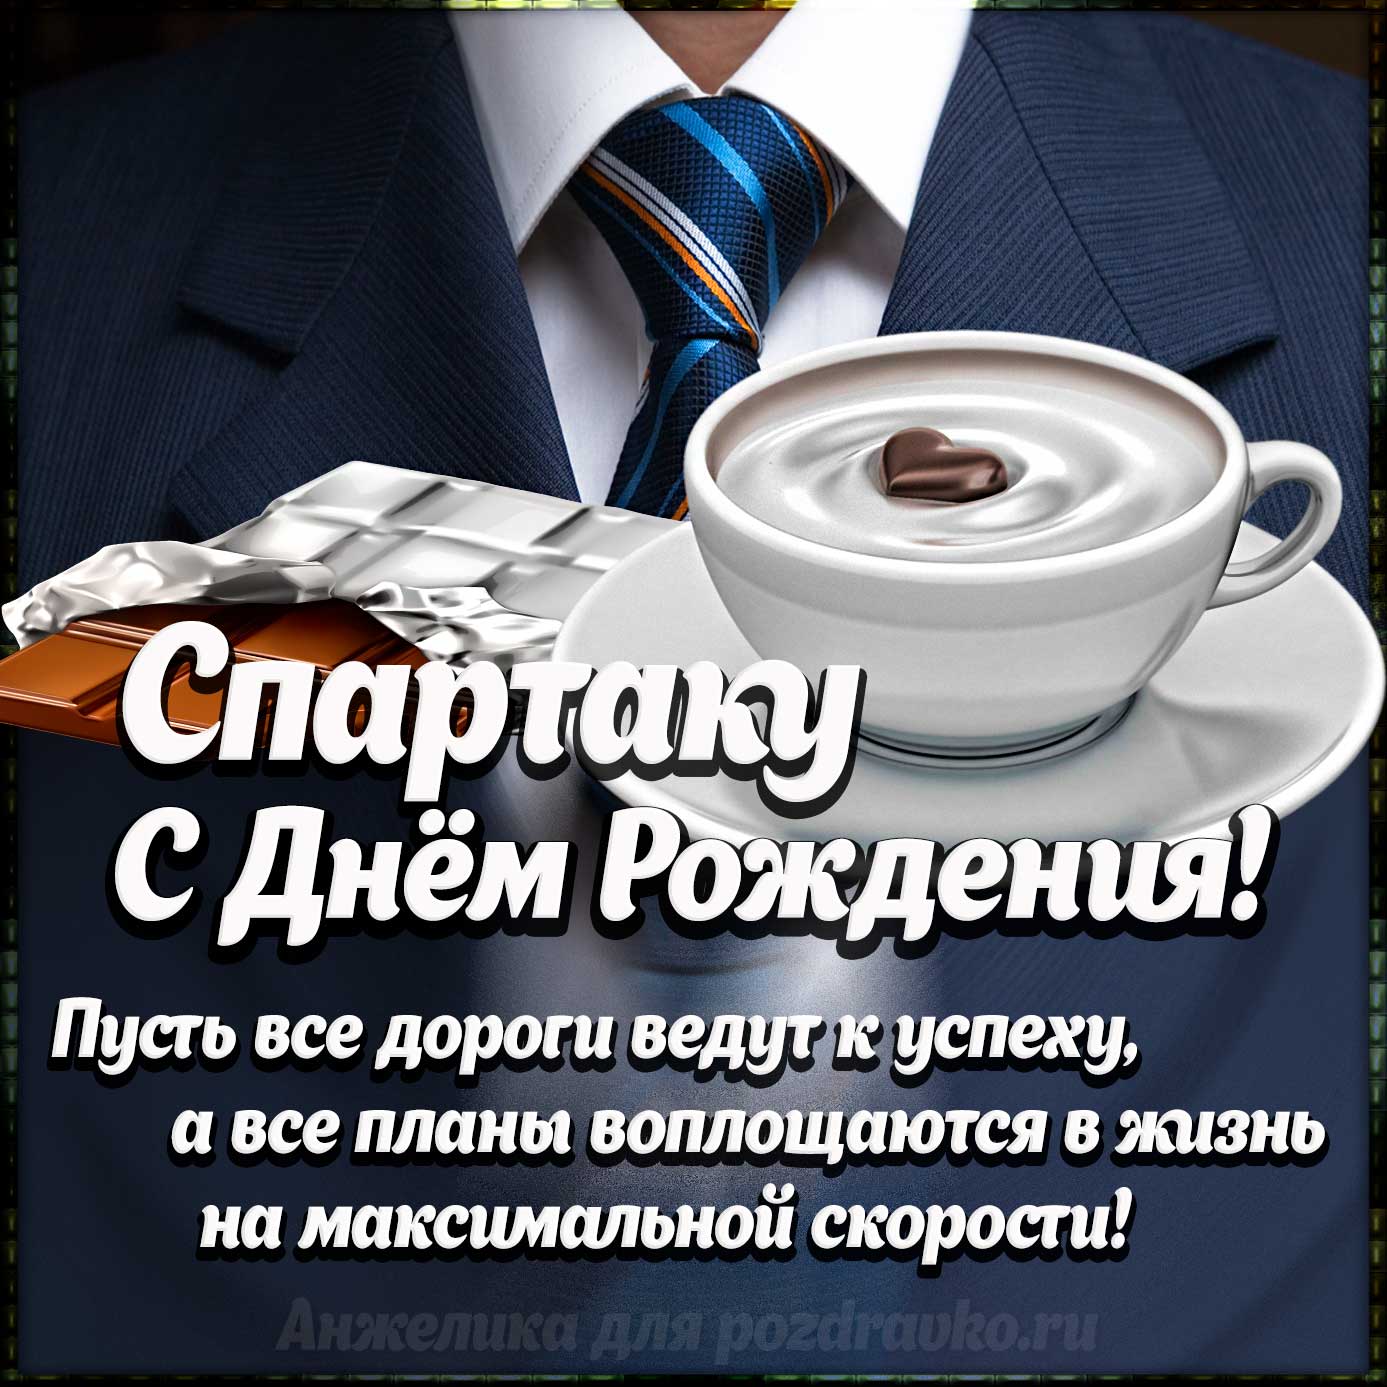 Открытка - Спартаку с Днем Рождения с галстуком, кофе и пожеланием. Скачать бесплатно или отправить картинку.